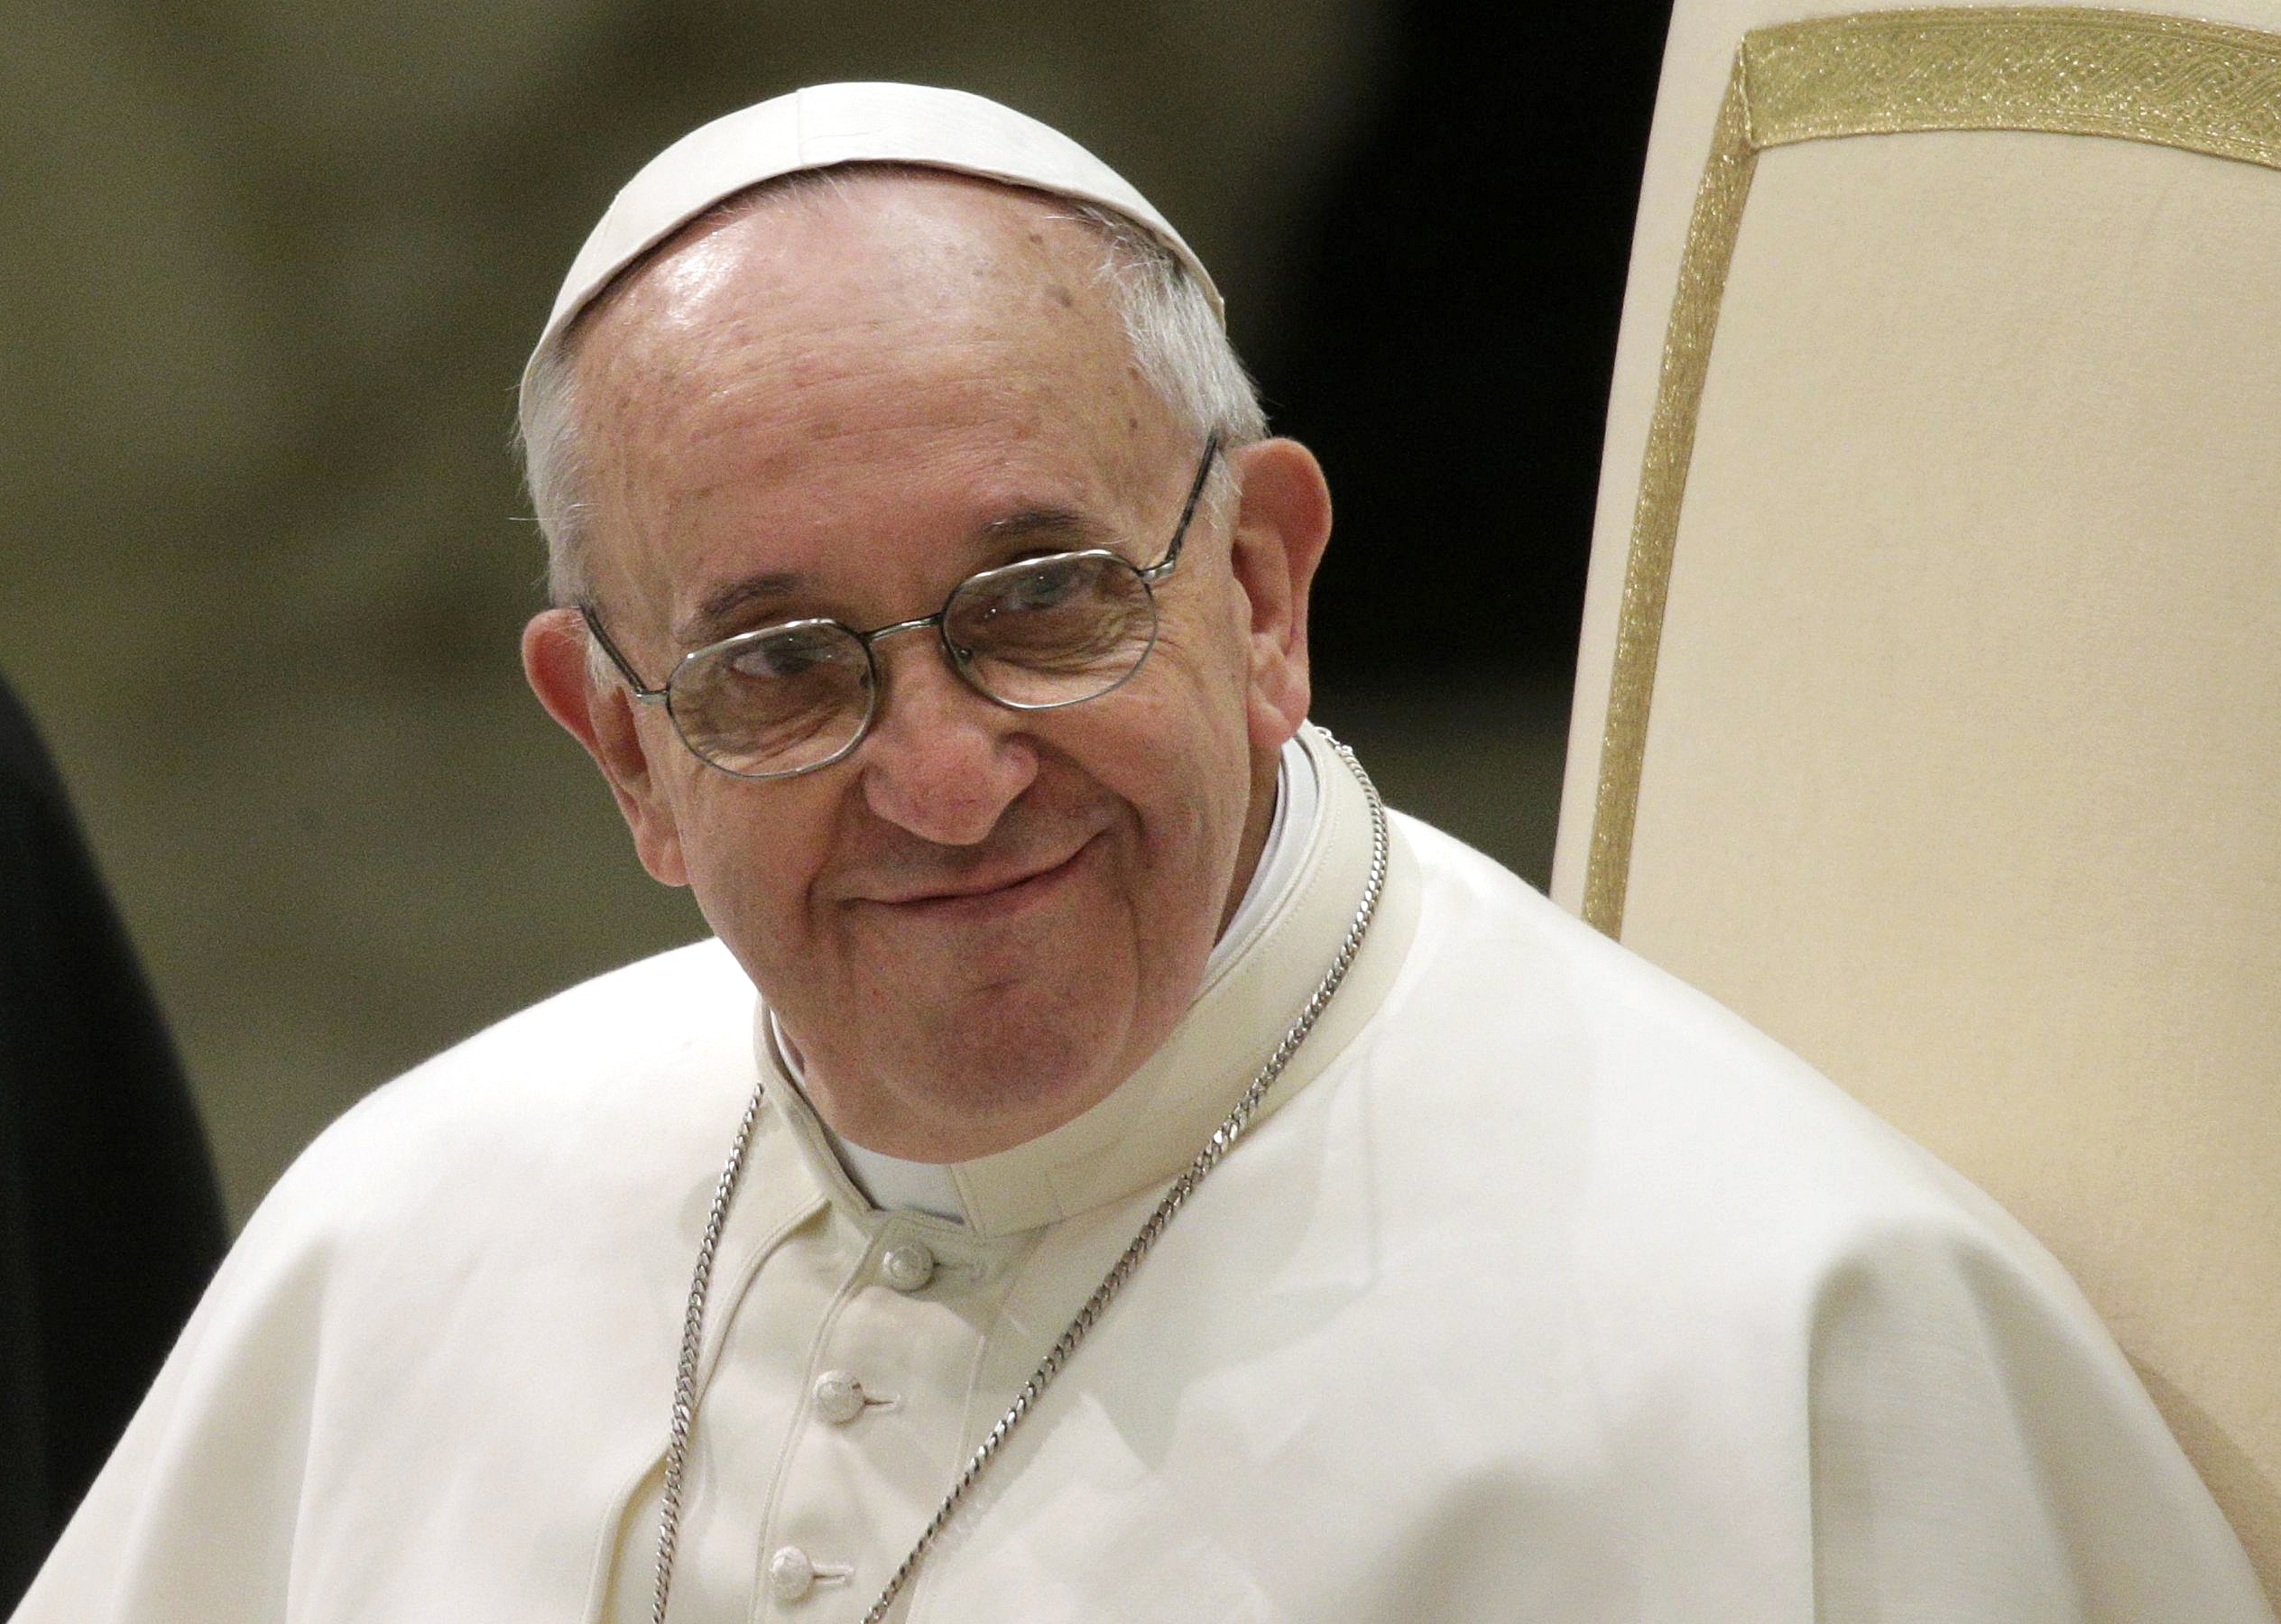 Θύματα του ναζισμού και κομμουνισμού θα οσιοποιήσει ο νέος Πάπας